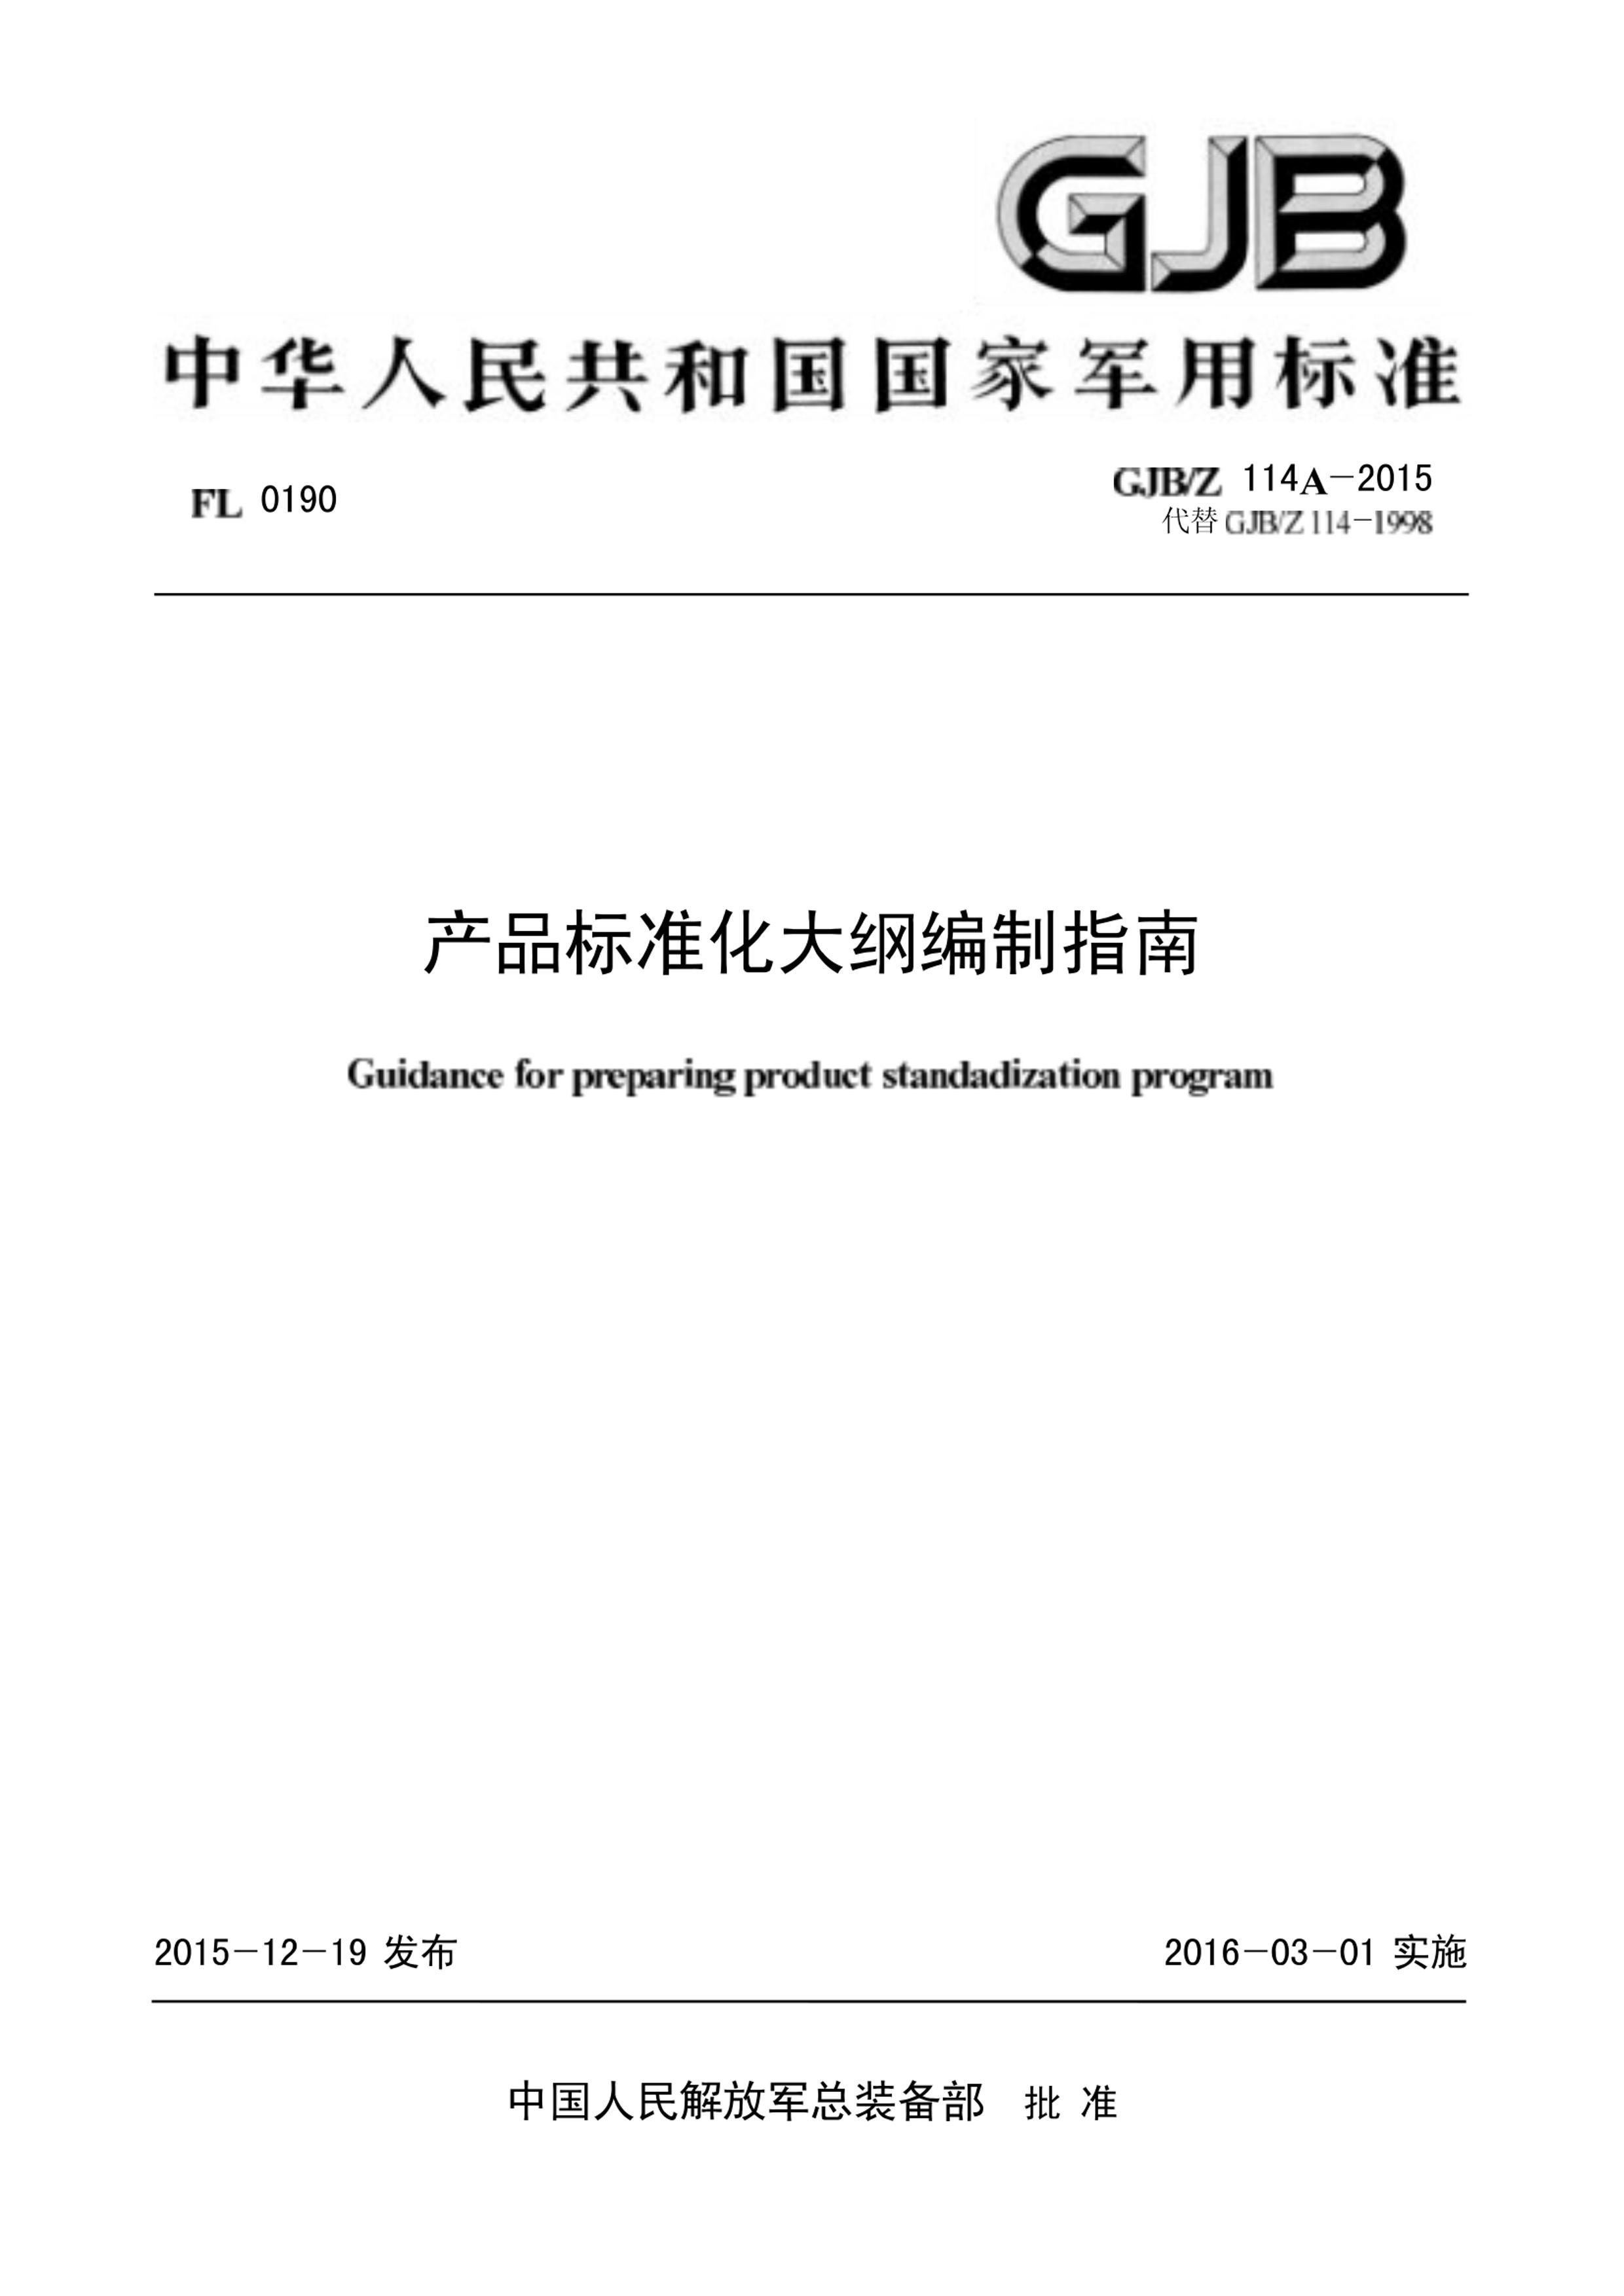 GJBZ 114A-2015.pdf1ҳ